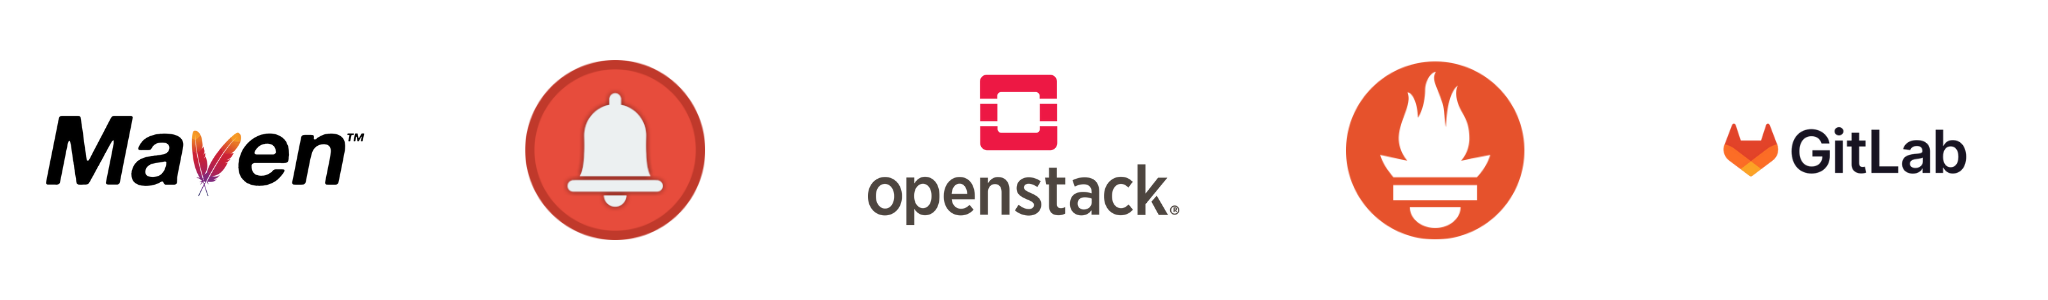 Maven Openstack GitLab